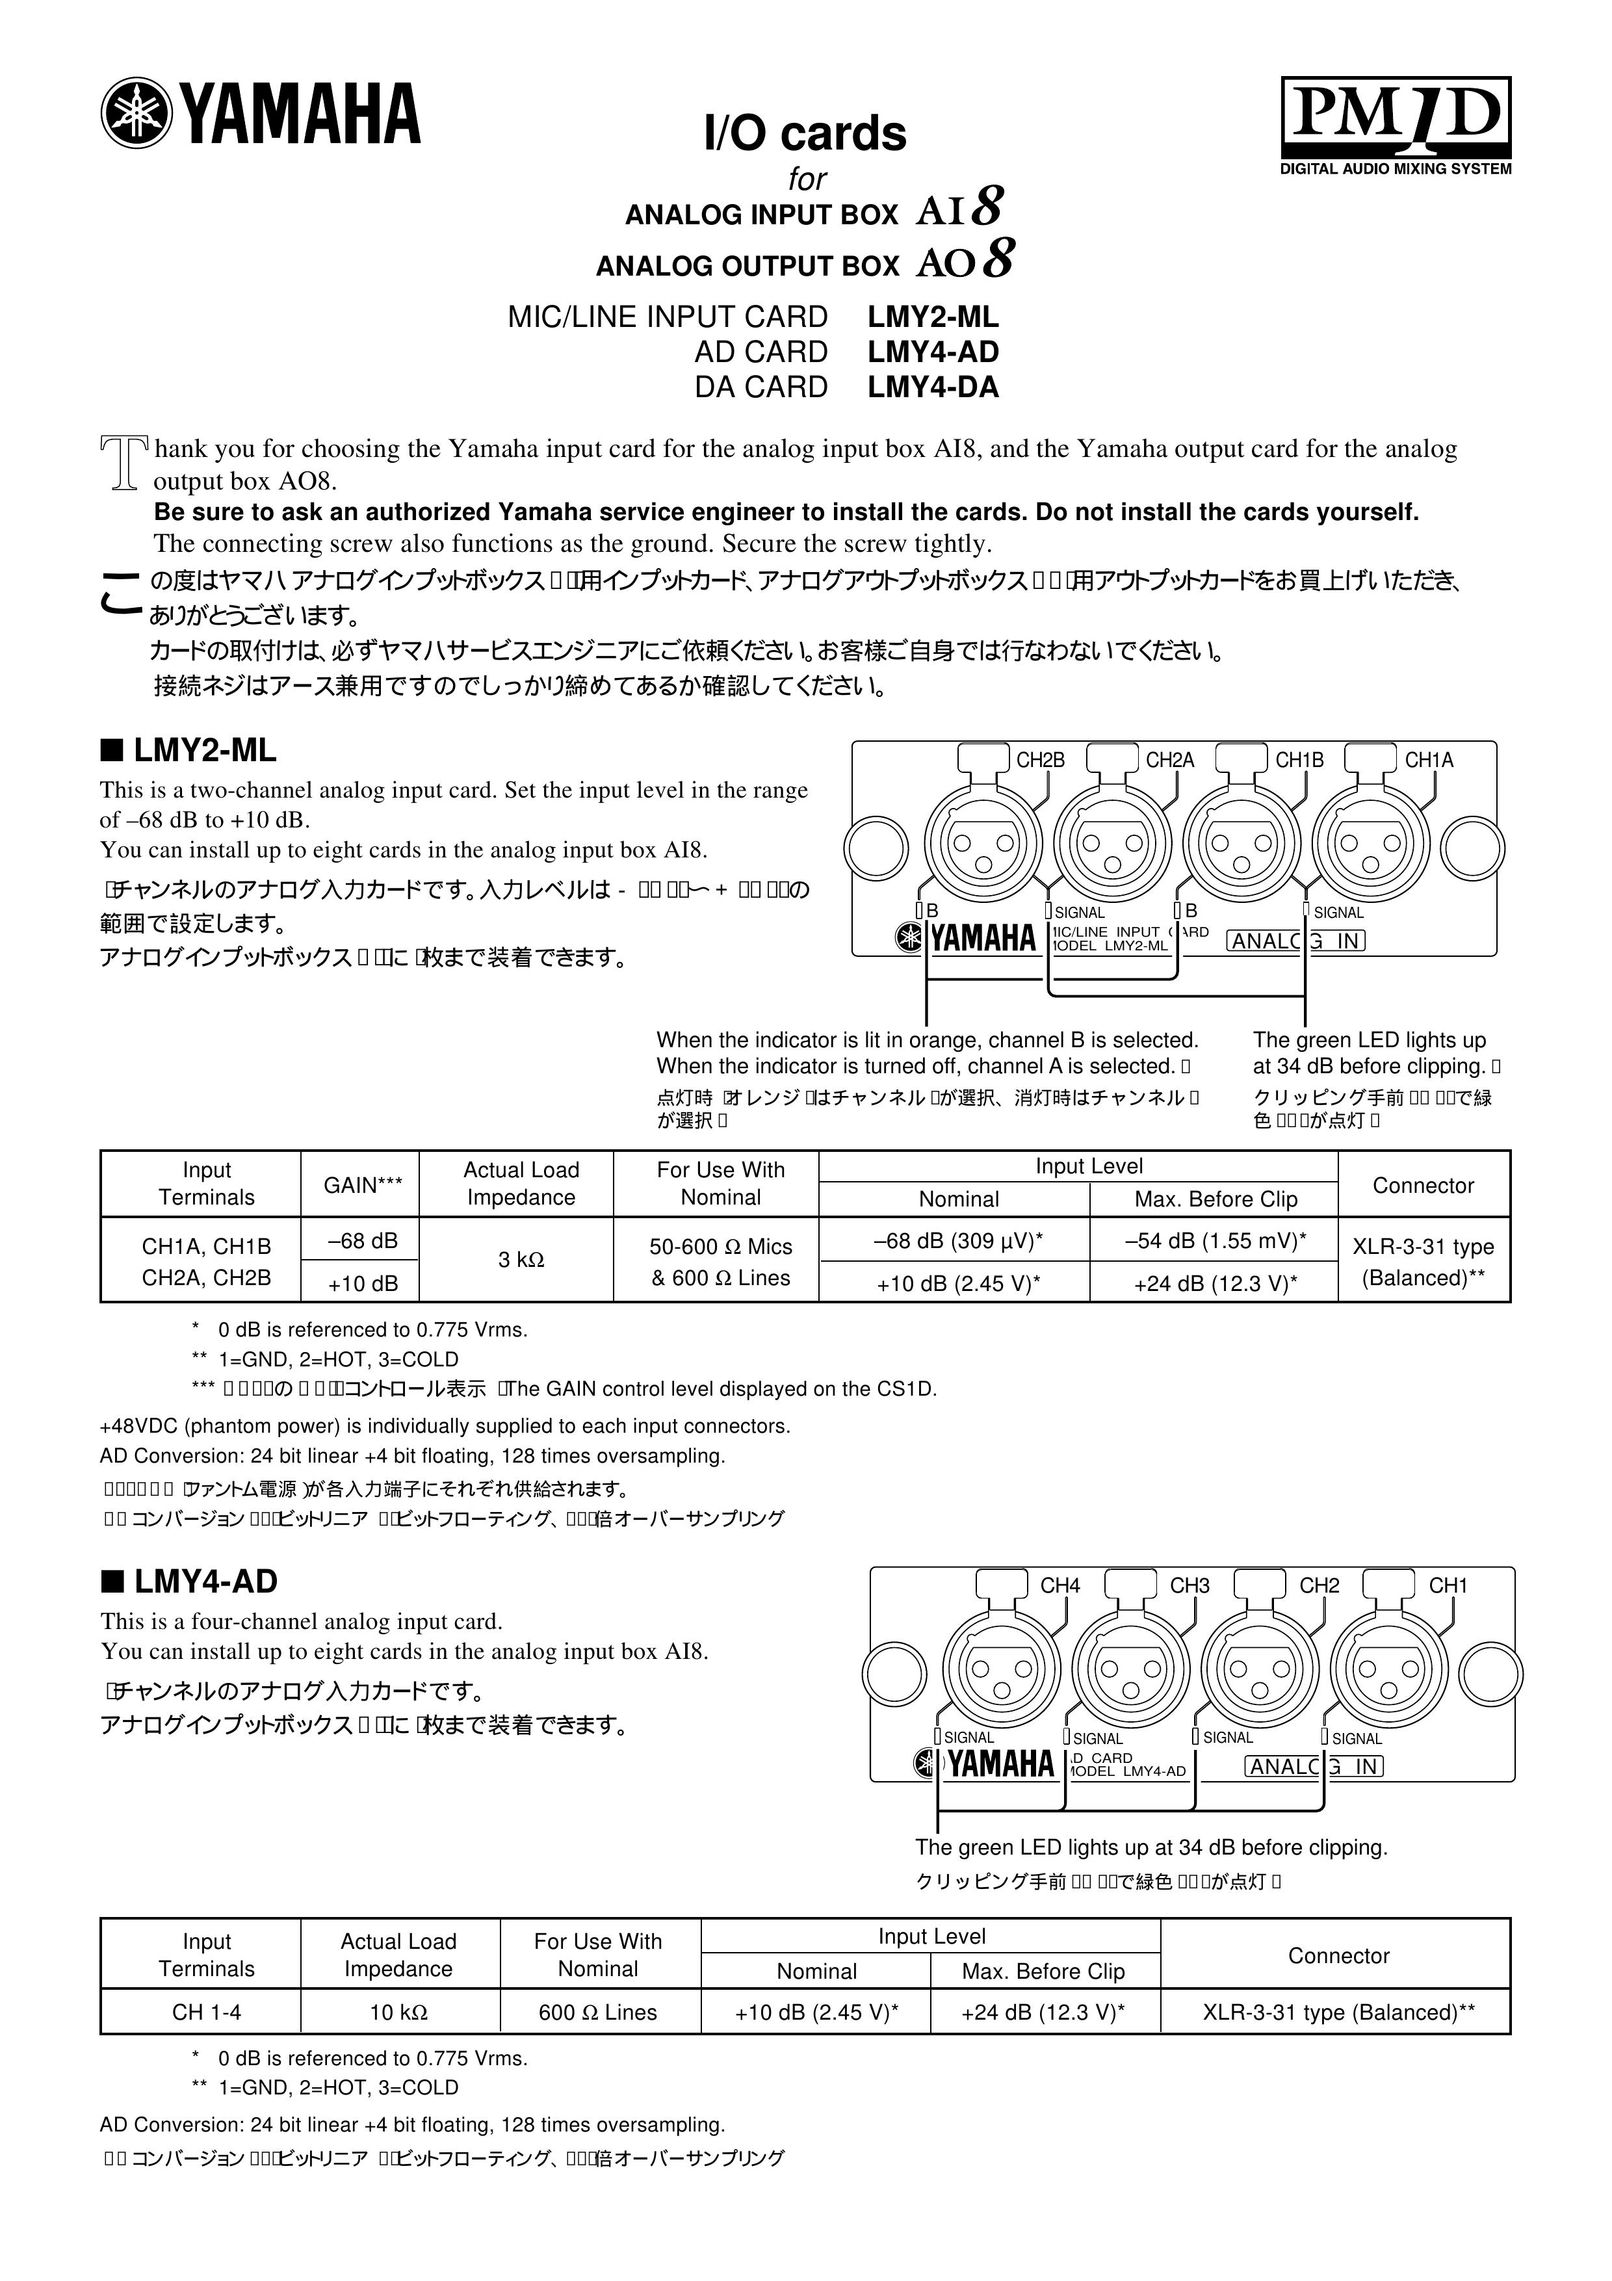 Yamaha LMY4-DA Computer Drive User Manual